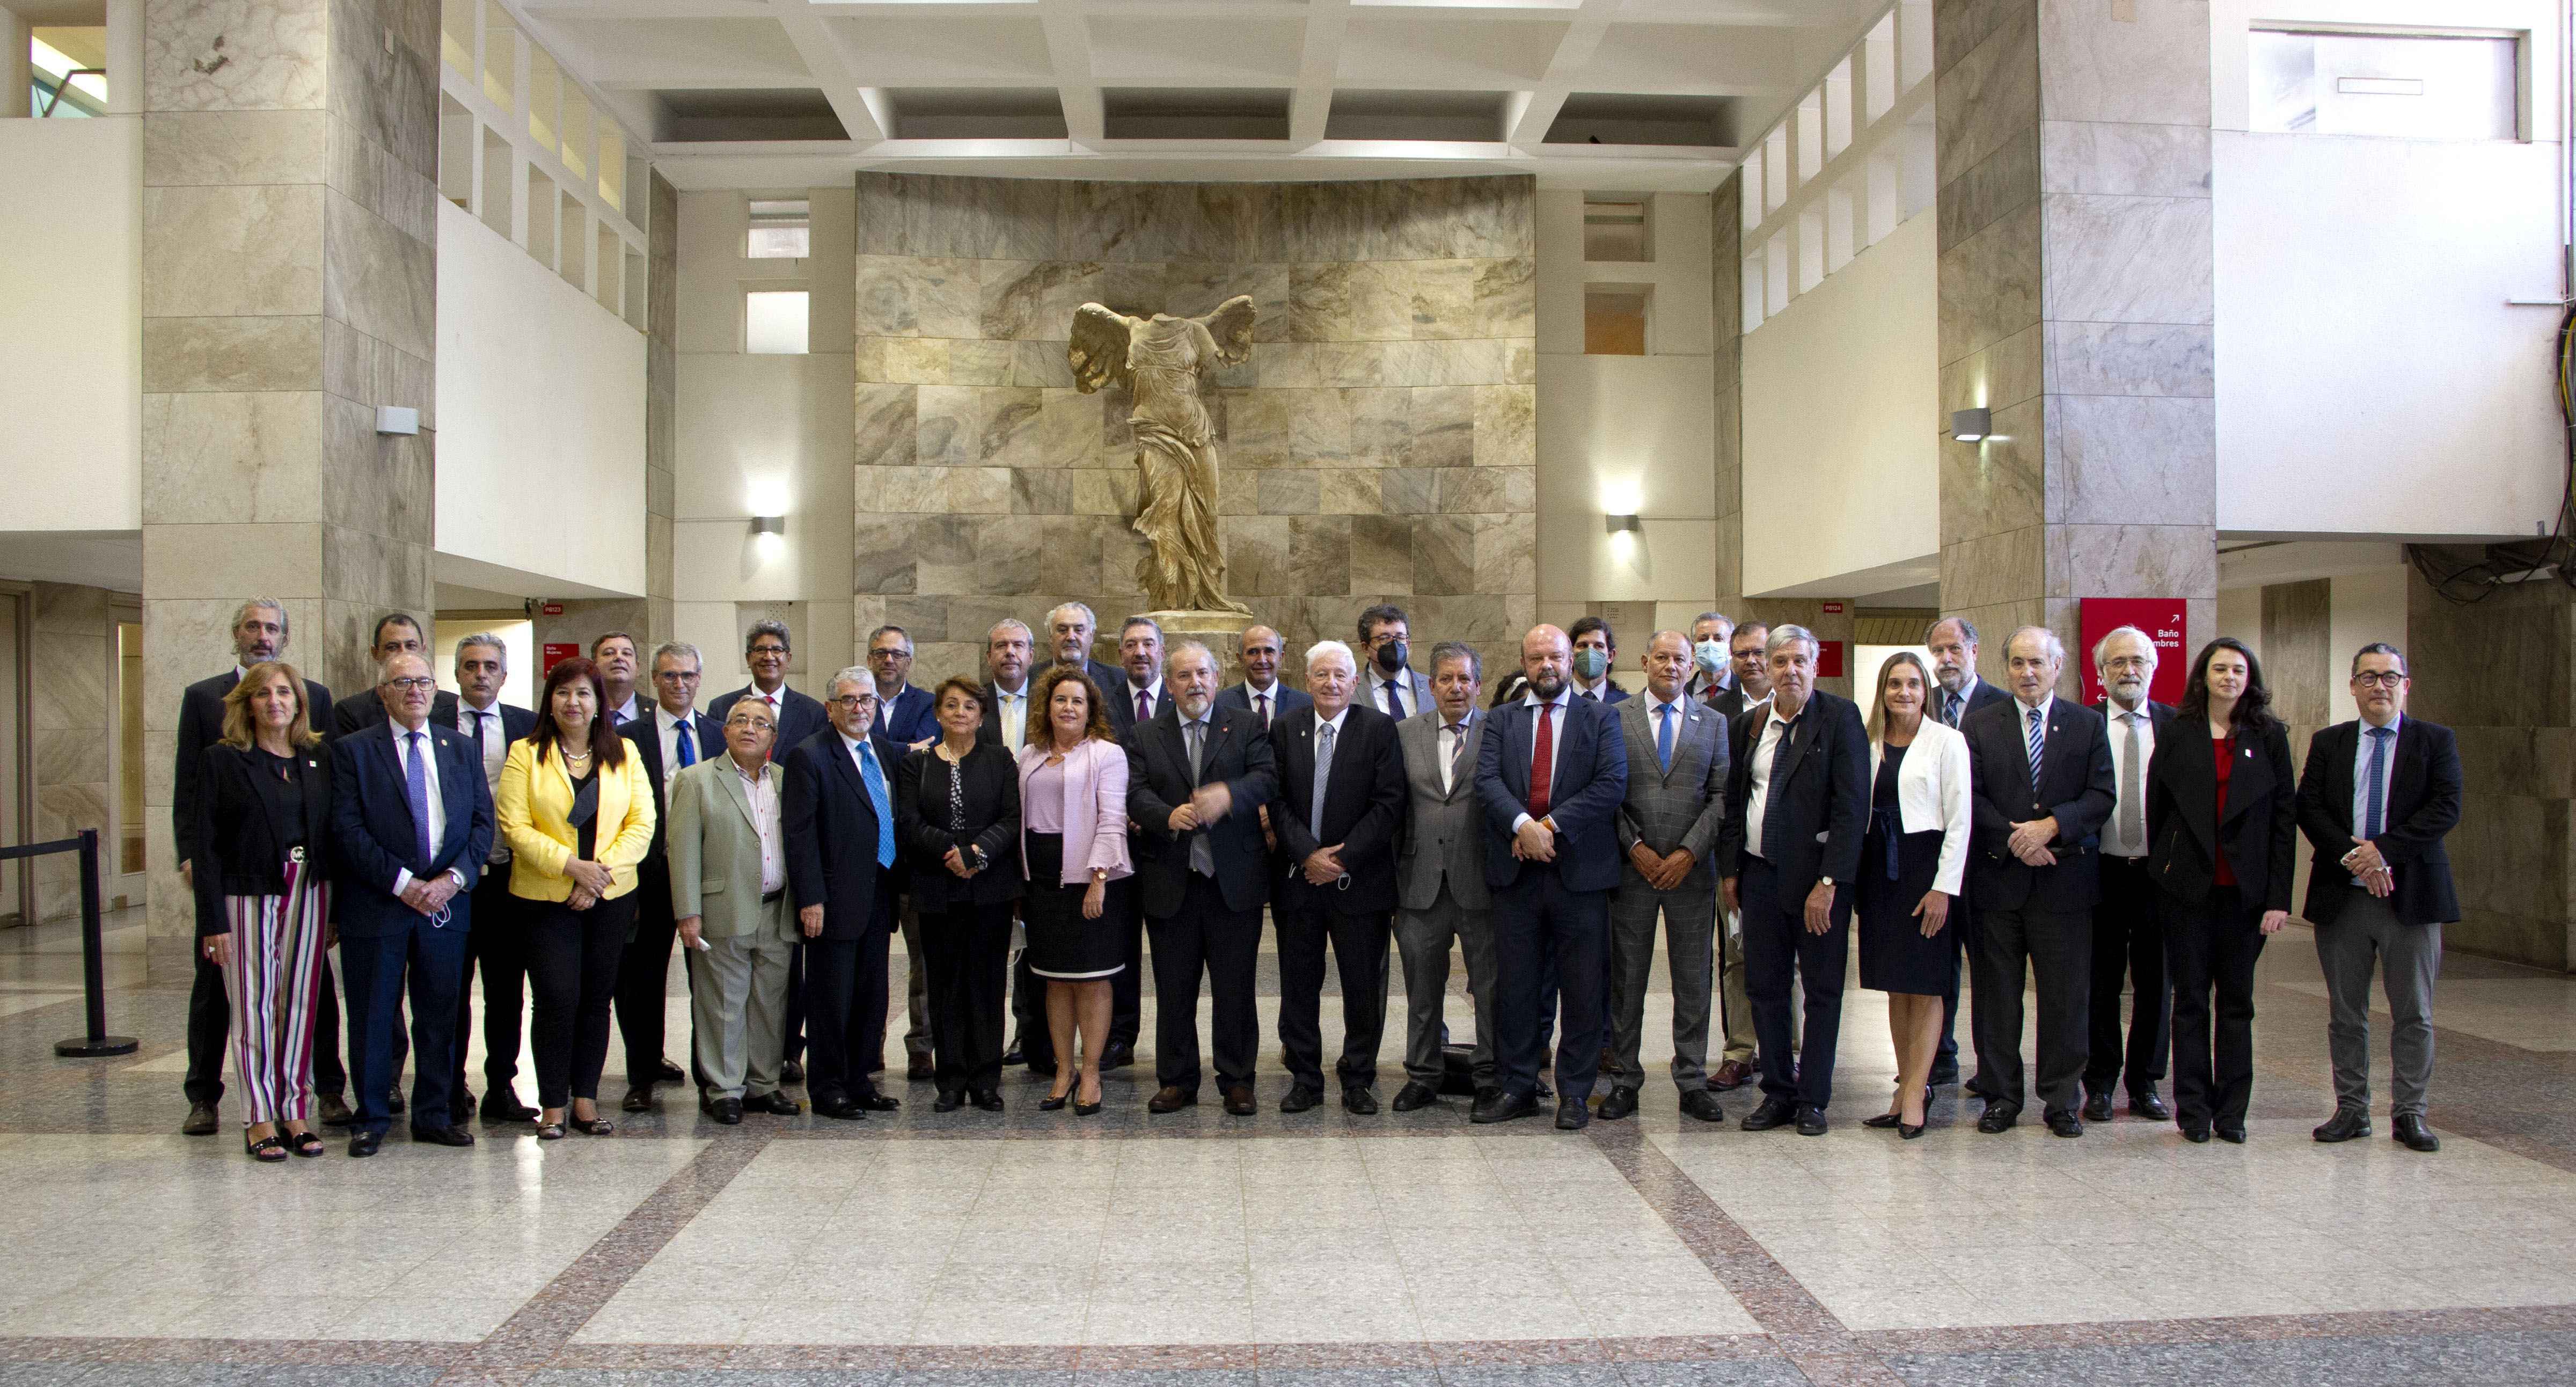 Dirigentes das universidades da AUGM reunidos em Montevidéu, em março deste ano, durante as celebrações dos 30 anos da entidade